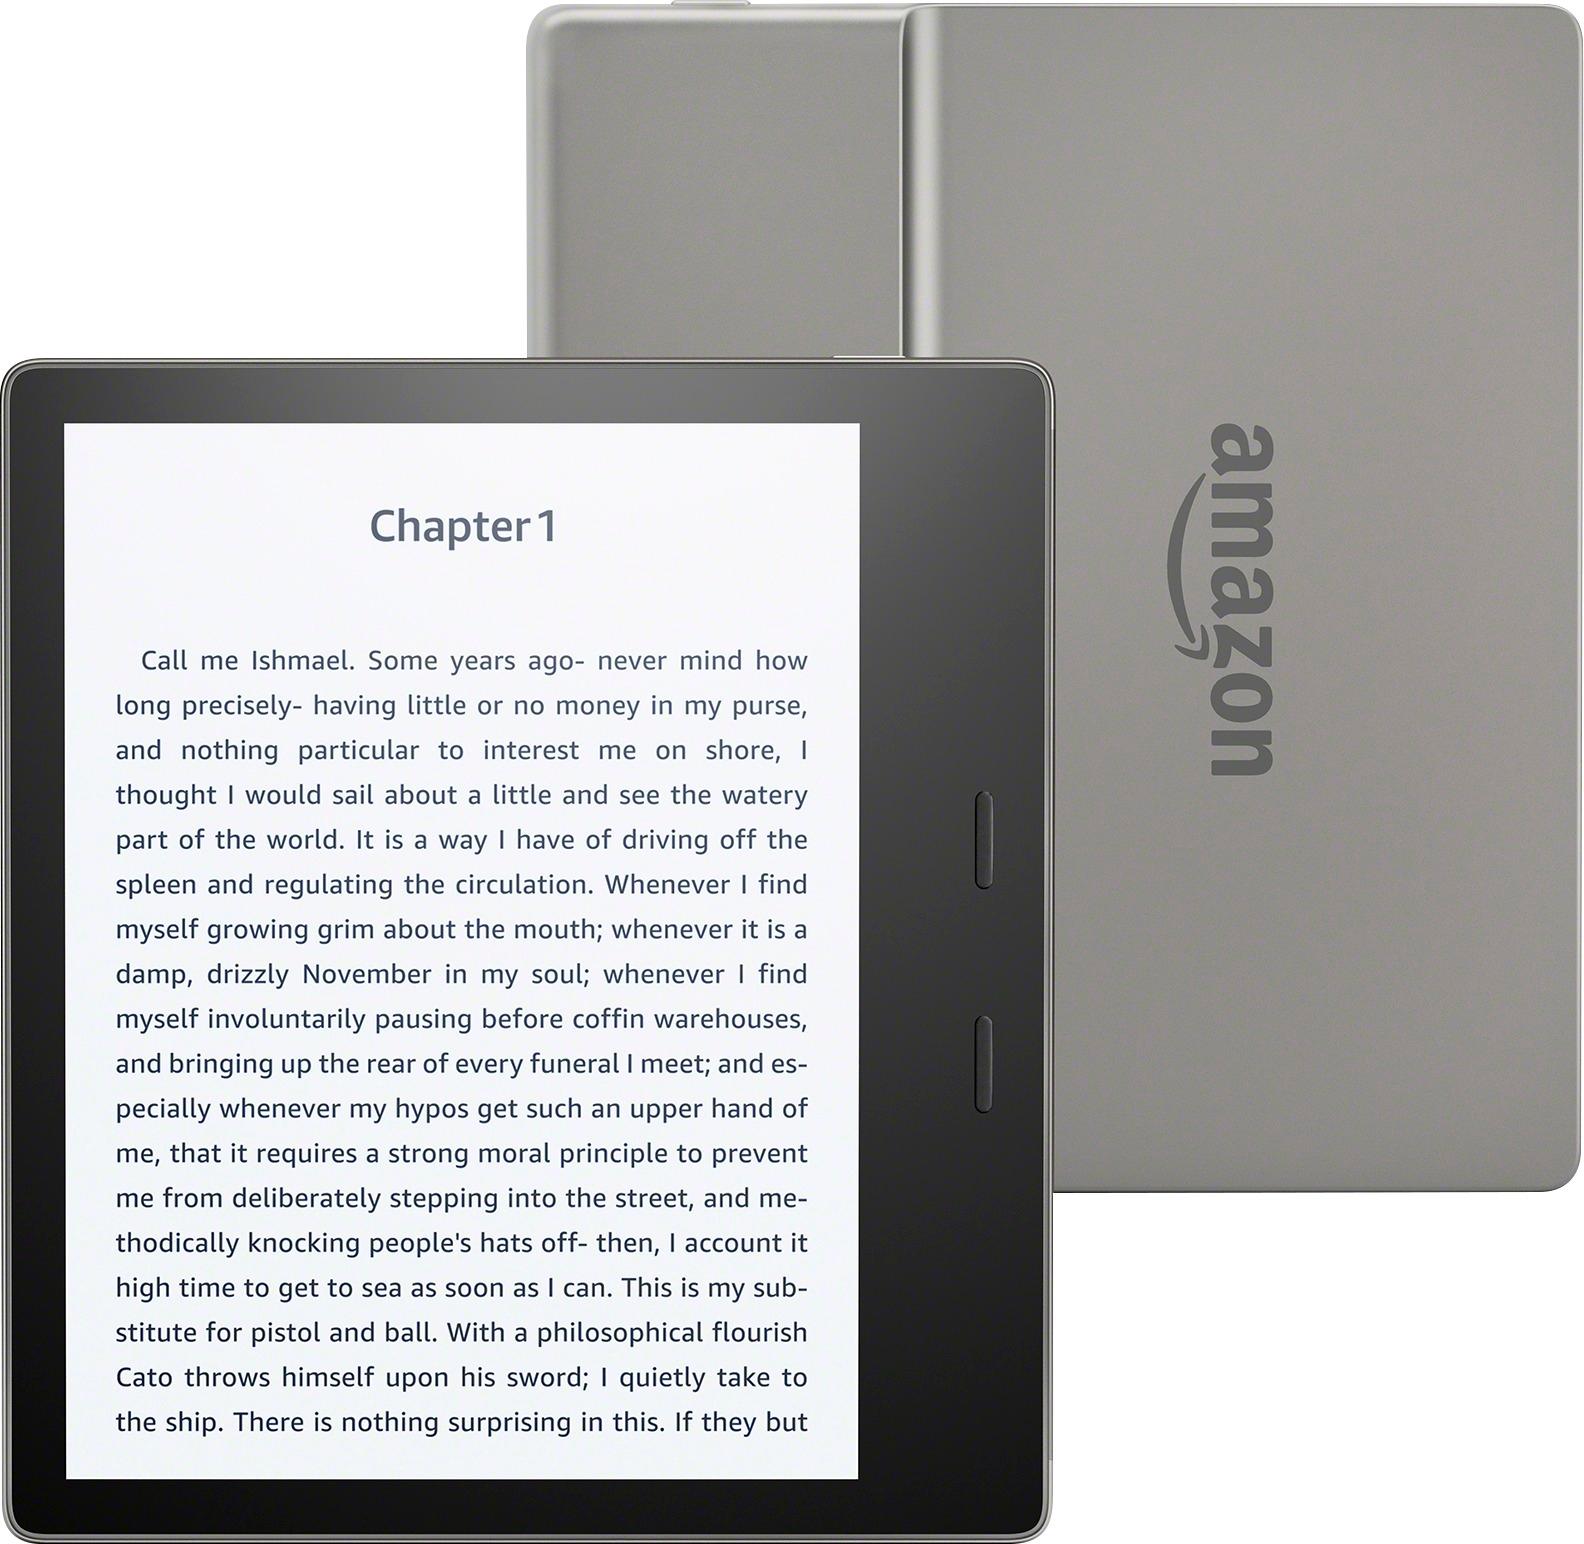 Kindle 8GB (10º generación) / Lector de libros electrónicos